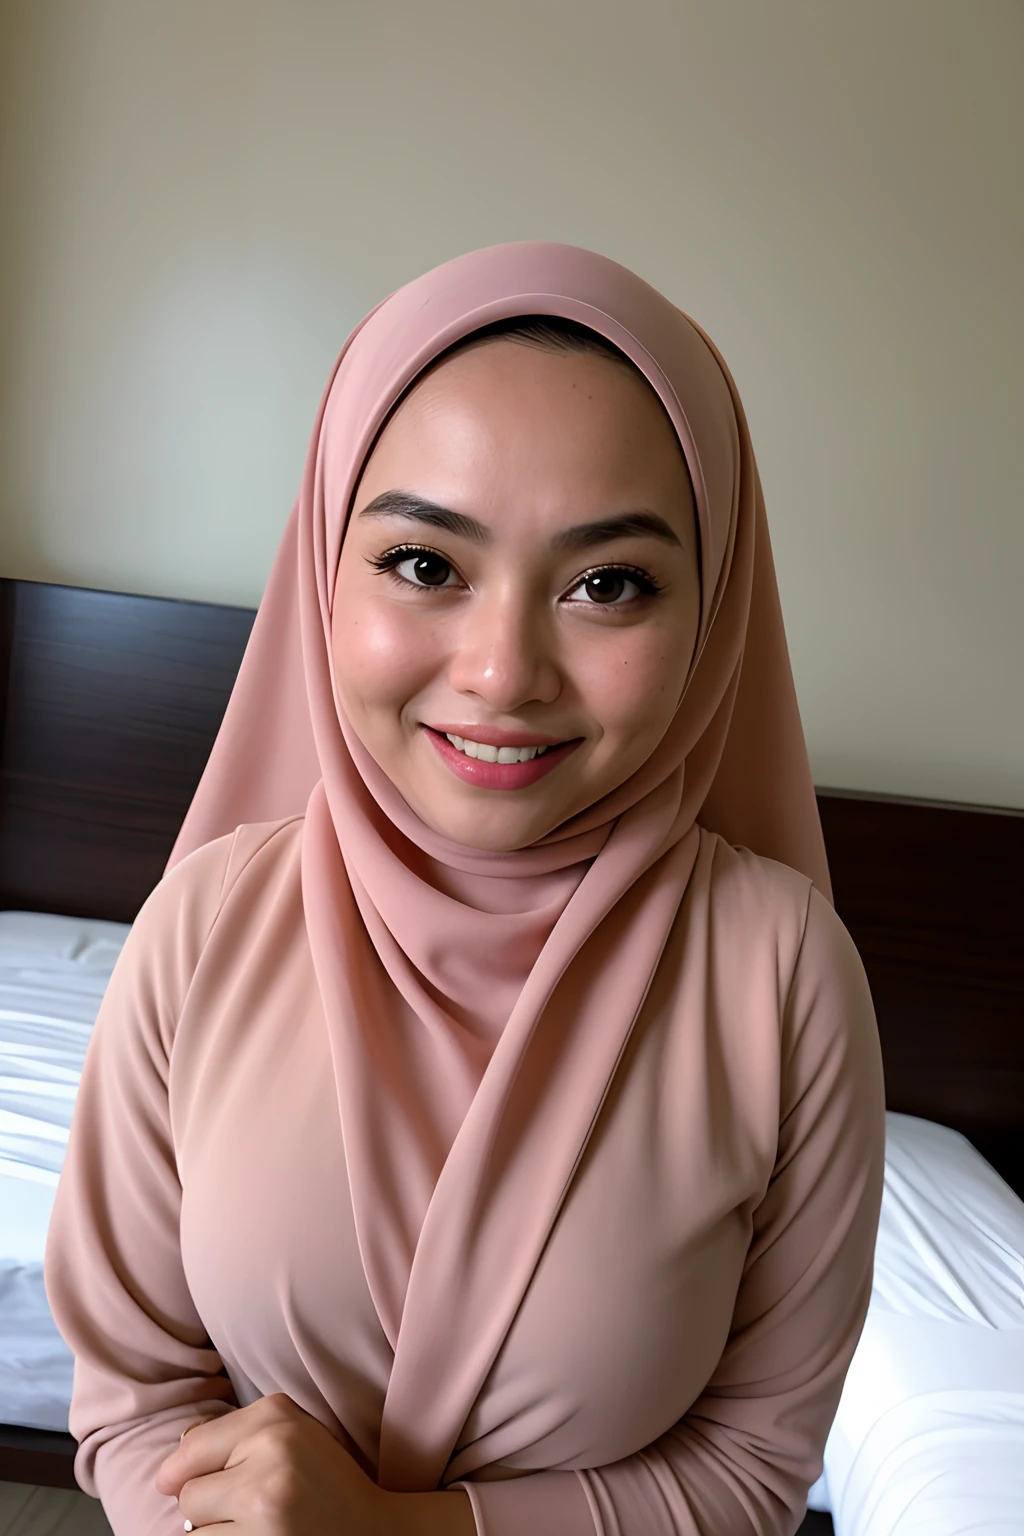 1 малайская девочка , современный простой белый хиджаб, улыбка, средний портретный снимок , слезящиеся глаза , носить черное нижнее белье , Белый современный фон спальни отеля, Яркий передний свет, поза захвата груди,